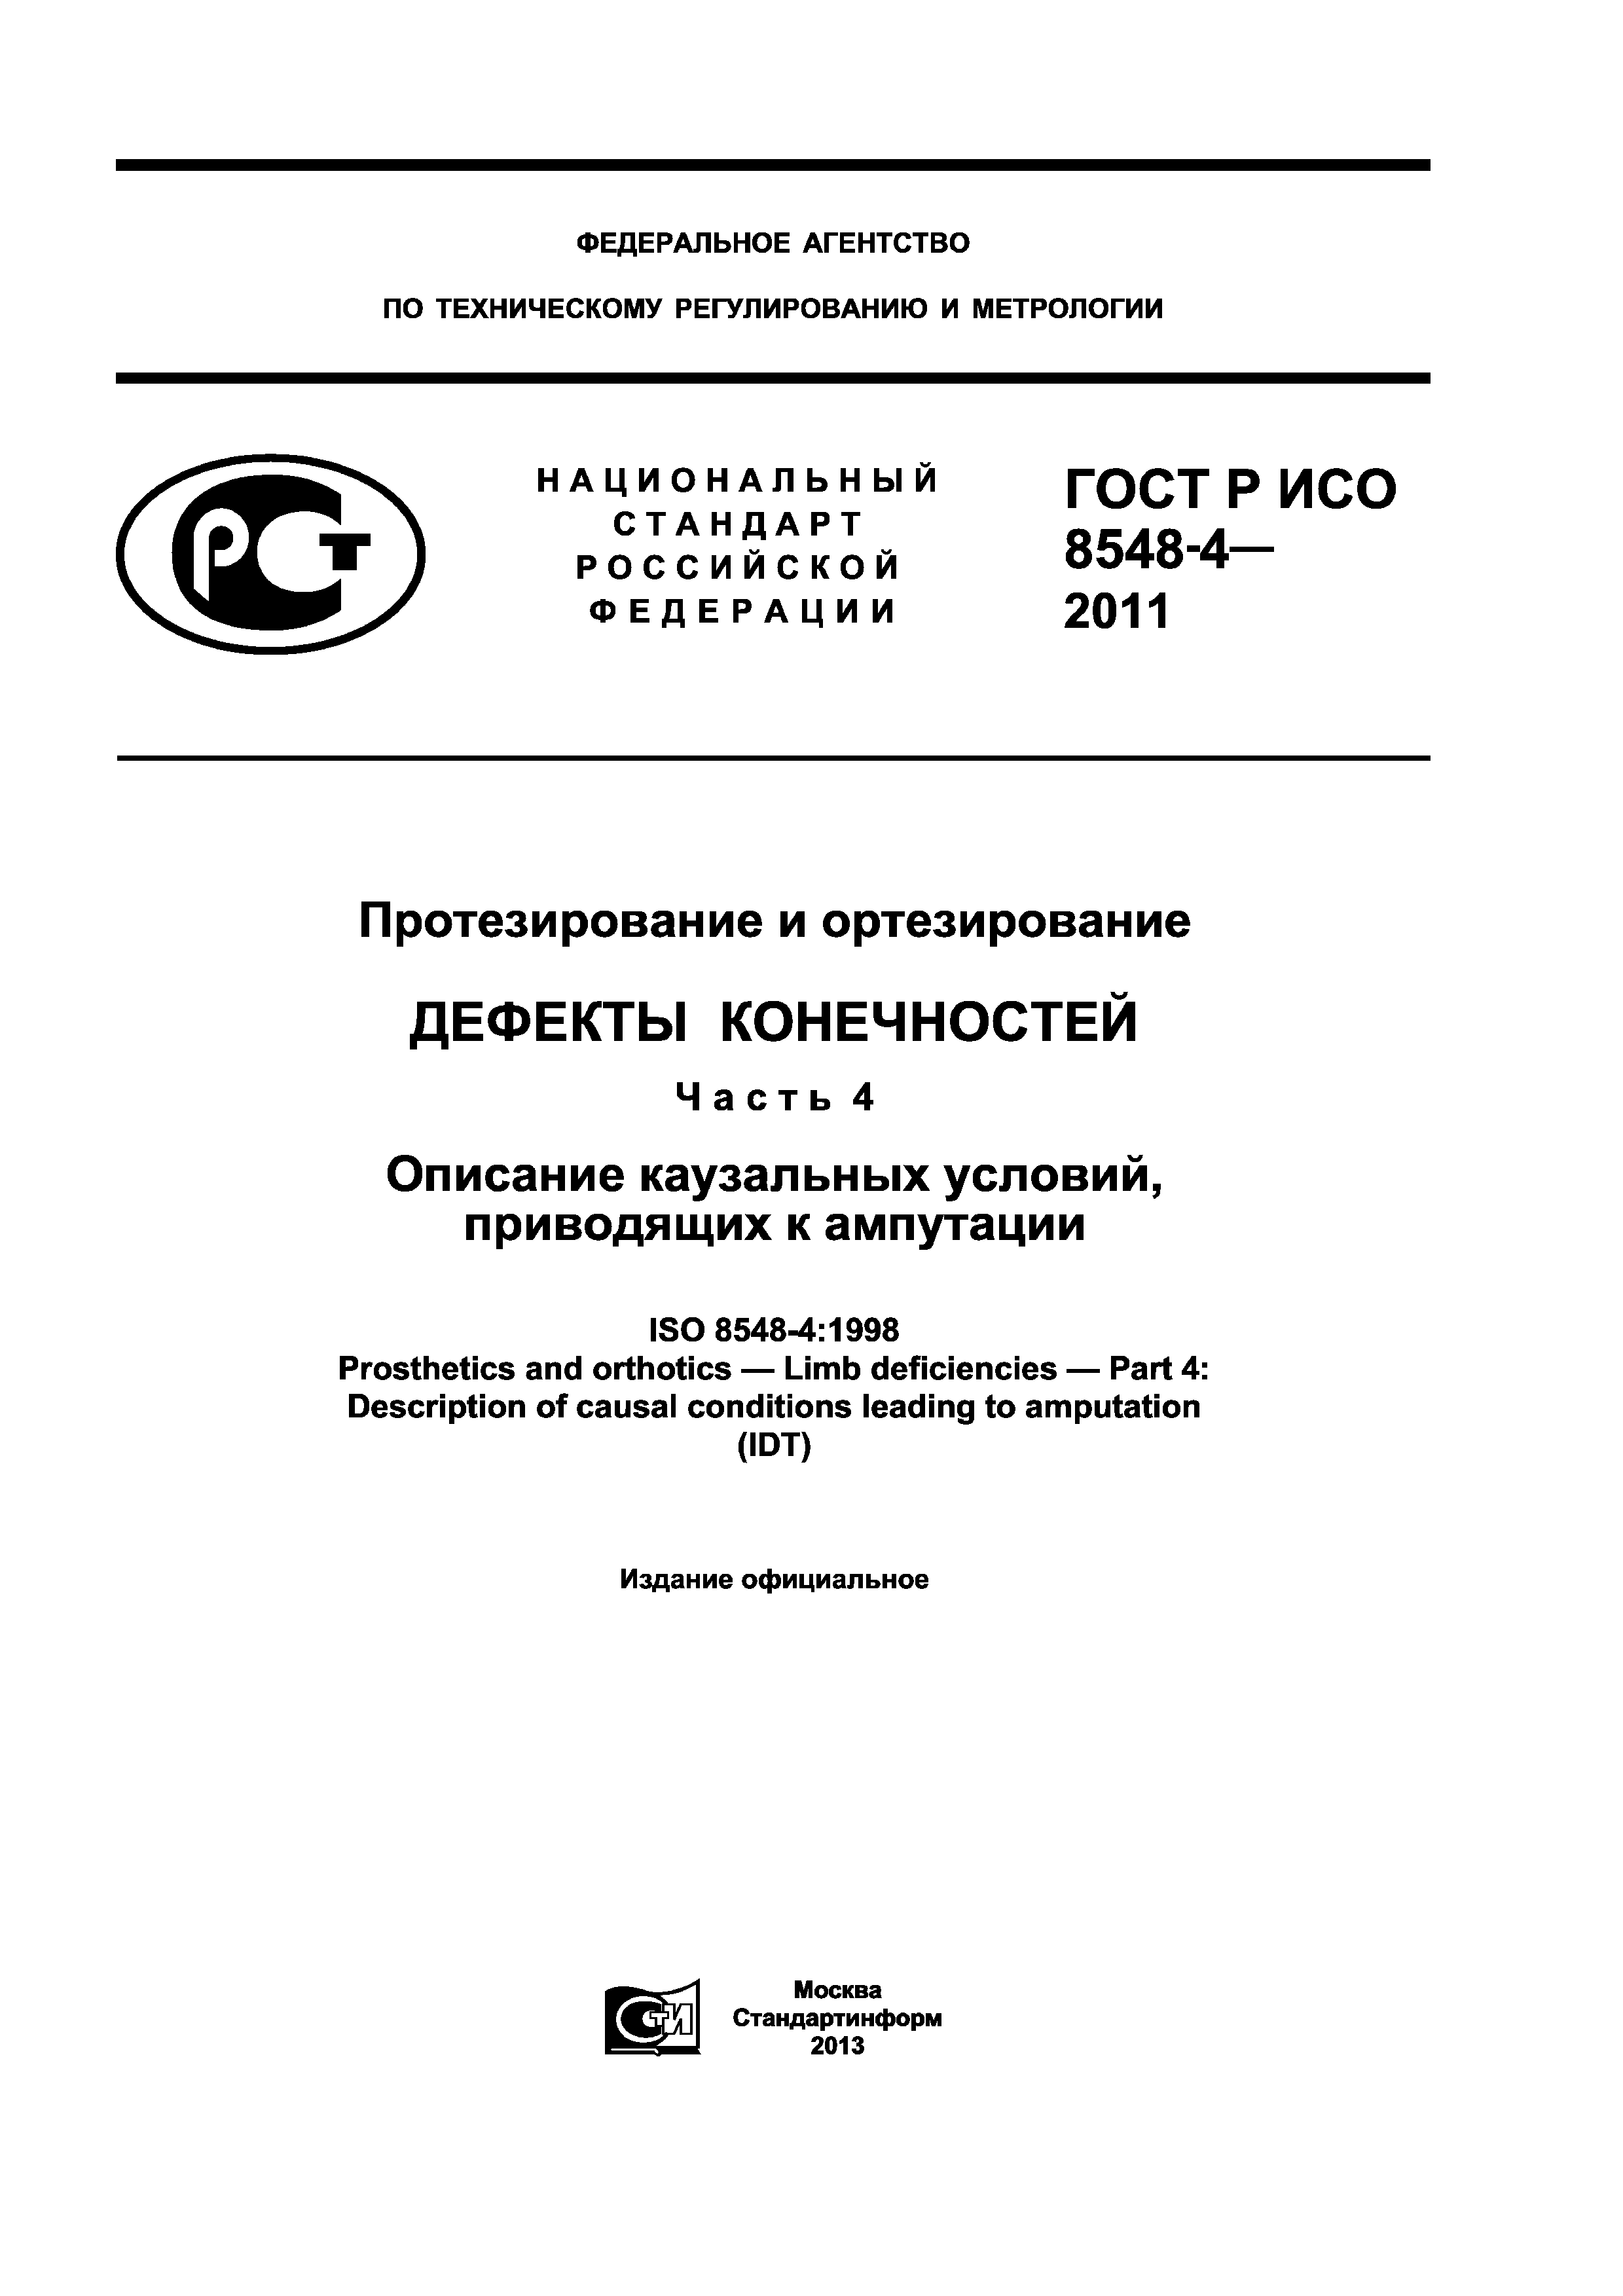 ГОСТ Р ИСО 8548-4-2011